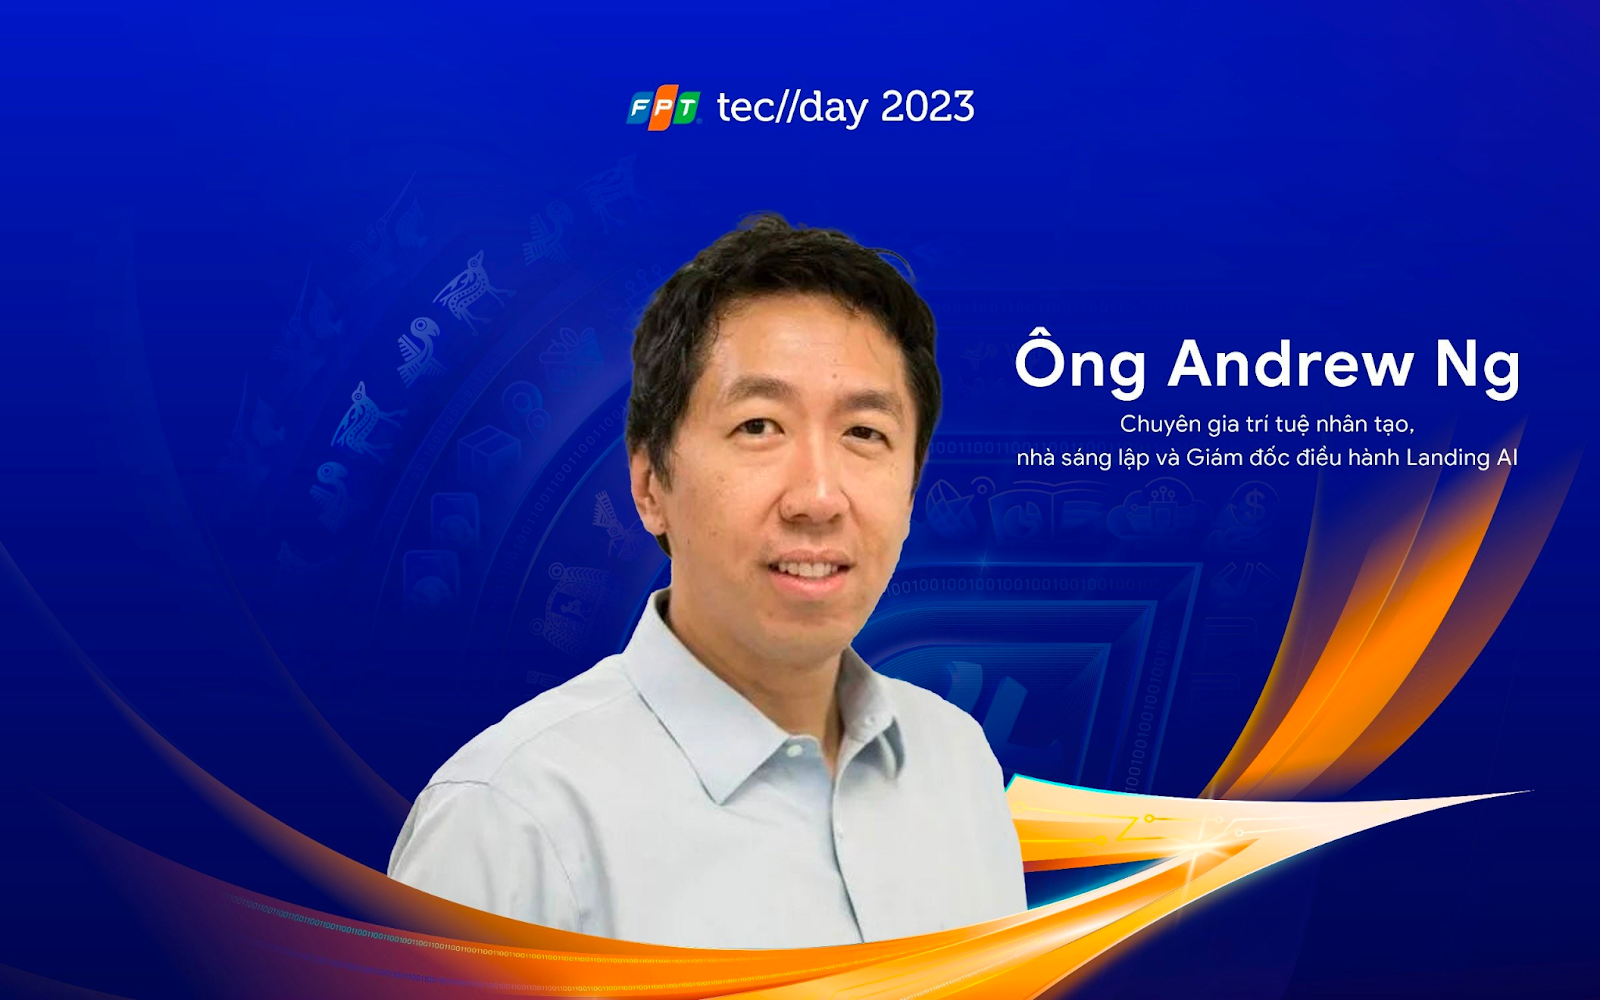 FPT Techday 2023 sẽ diễn ra ngày 24 -25/10 tại Hà Nội, có sự tham gia của thiên tài AI Andrew Ng - FRci7MQ rqcRjh0xGbB0jwE8sdtcuwydrynPuEpSq23TBt6eN2HXZ jwYpWNn HQzrzXEvkNZgcjsLJcdPlkndNh